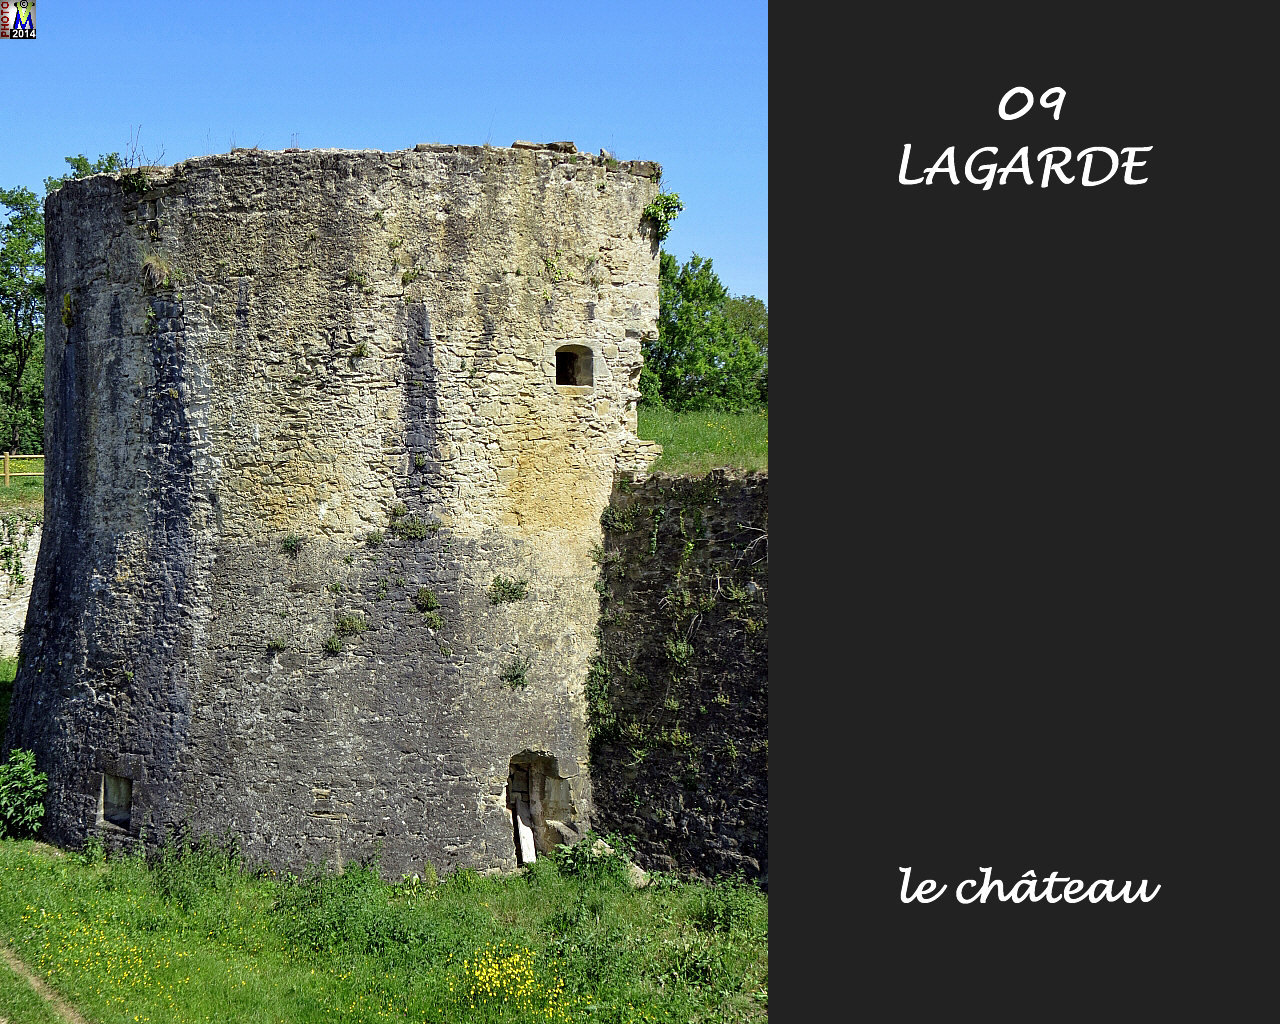 09LAGARDE_chateau_138.jpg